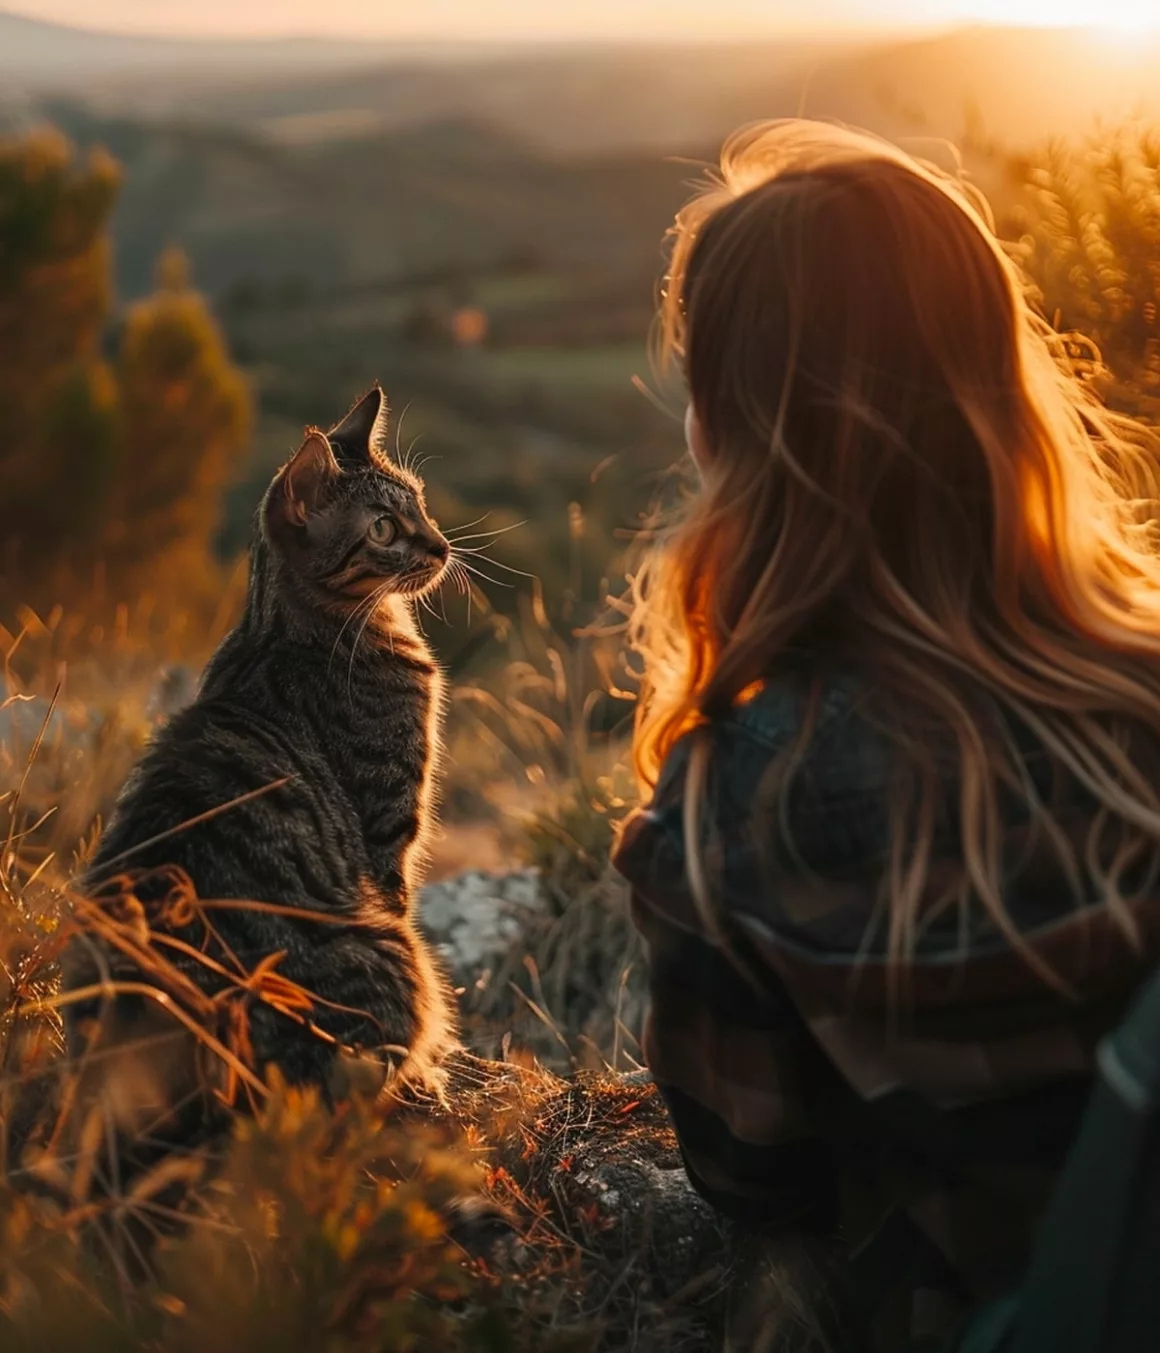 Femme et chat regardent le coucher de soleil.